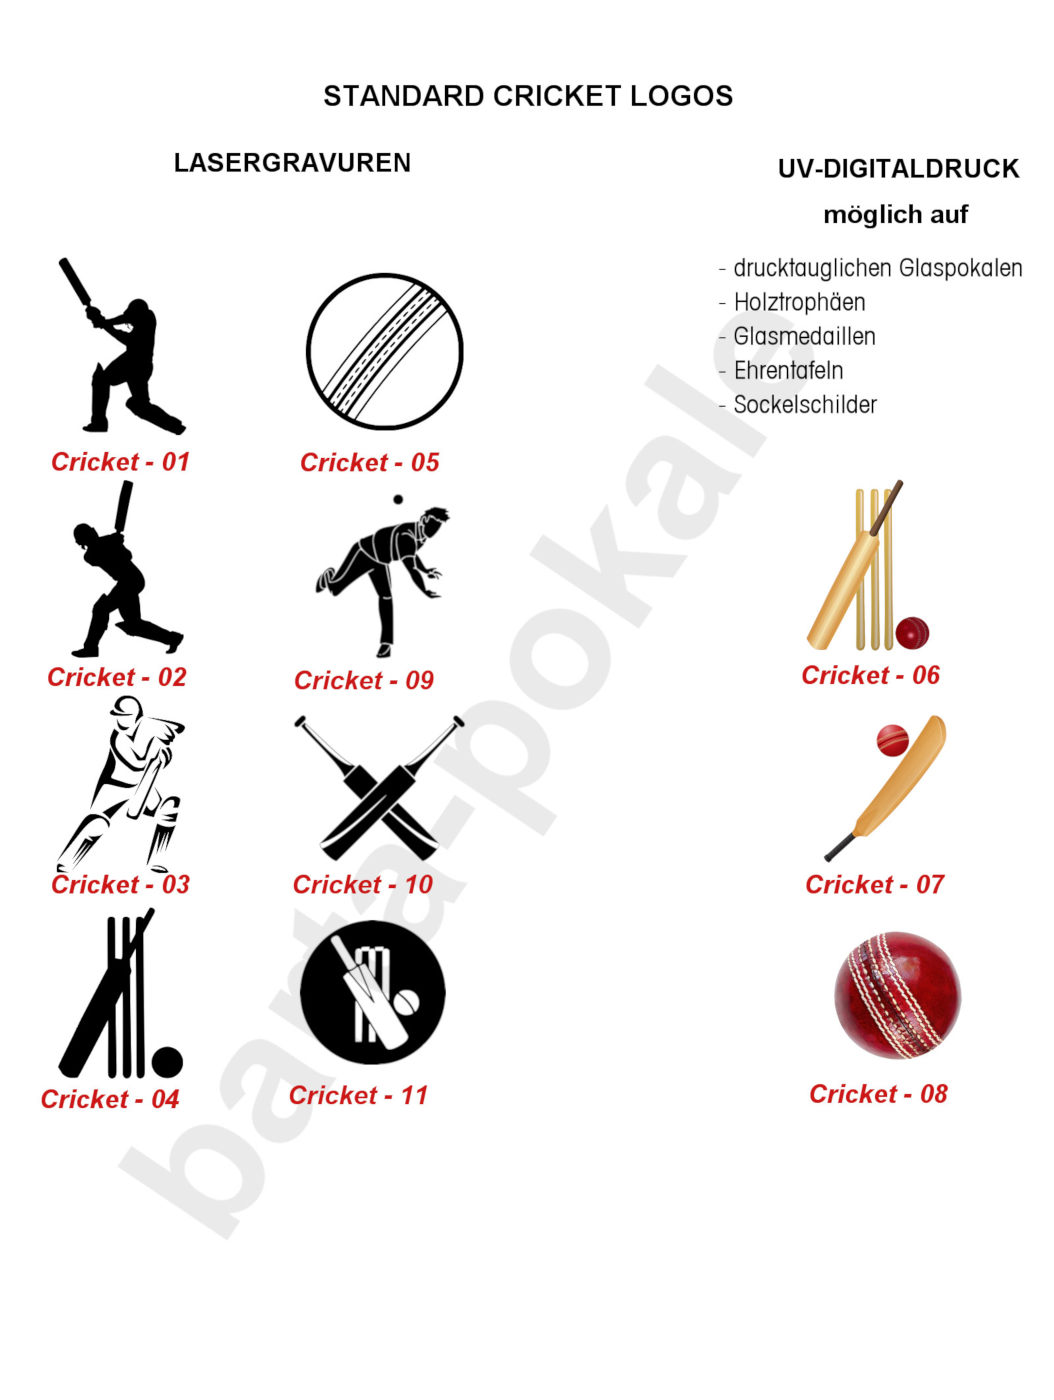 Standard Logos Cricket